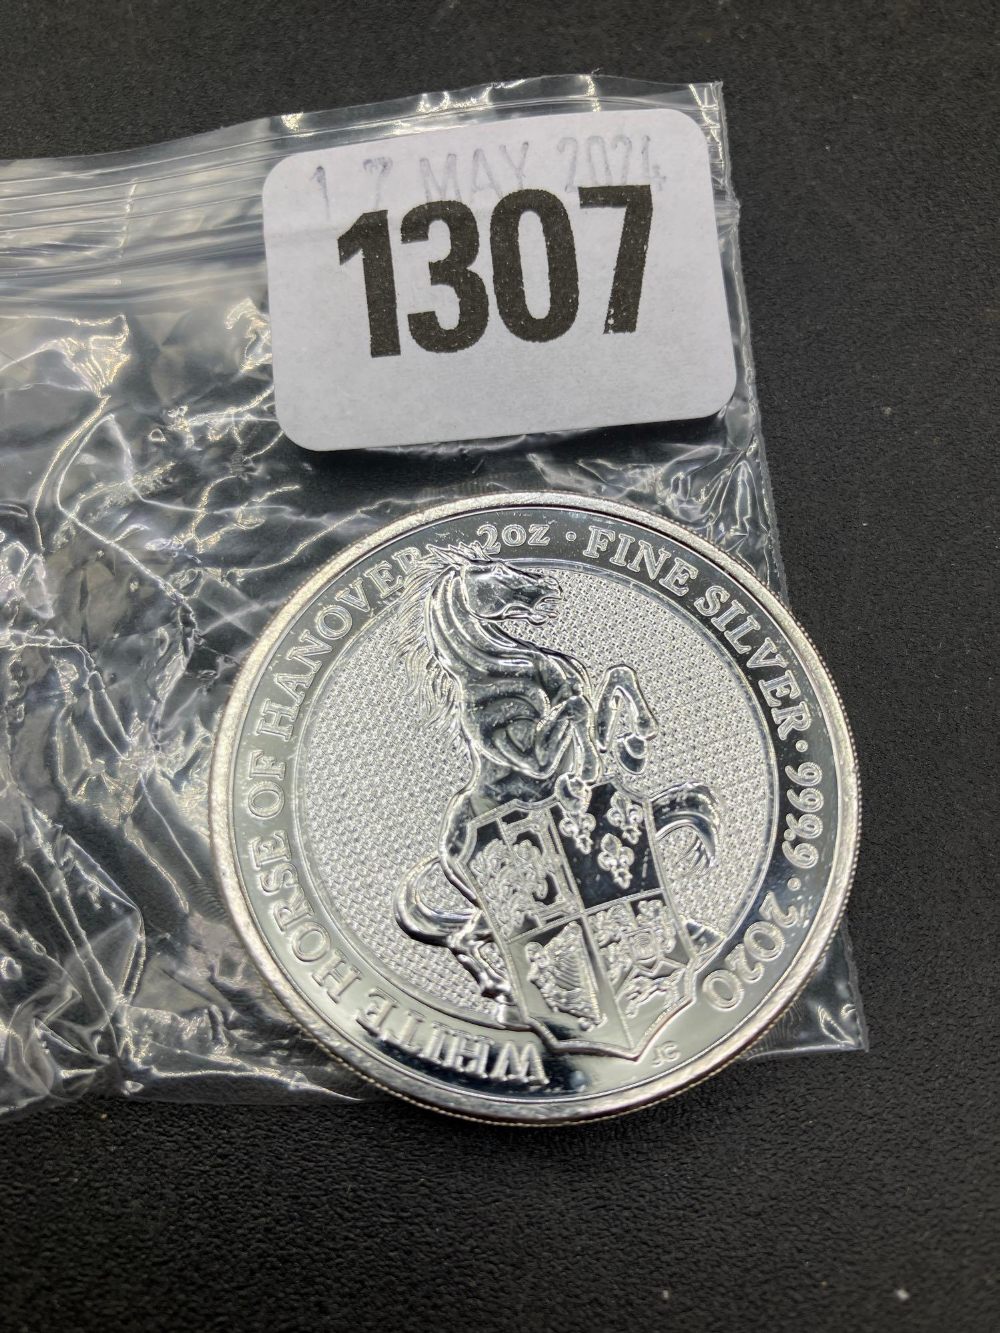 2020 2oz Queens coin